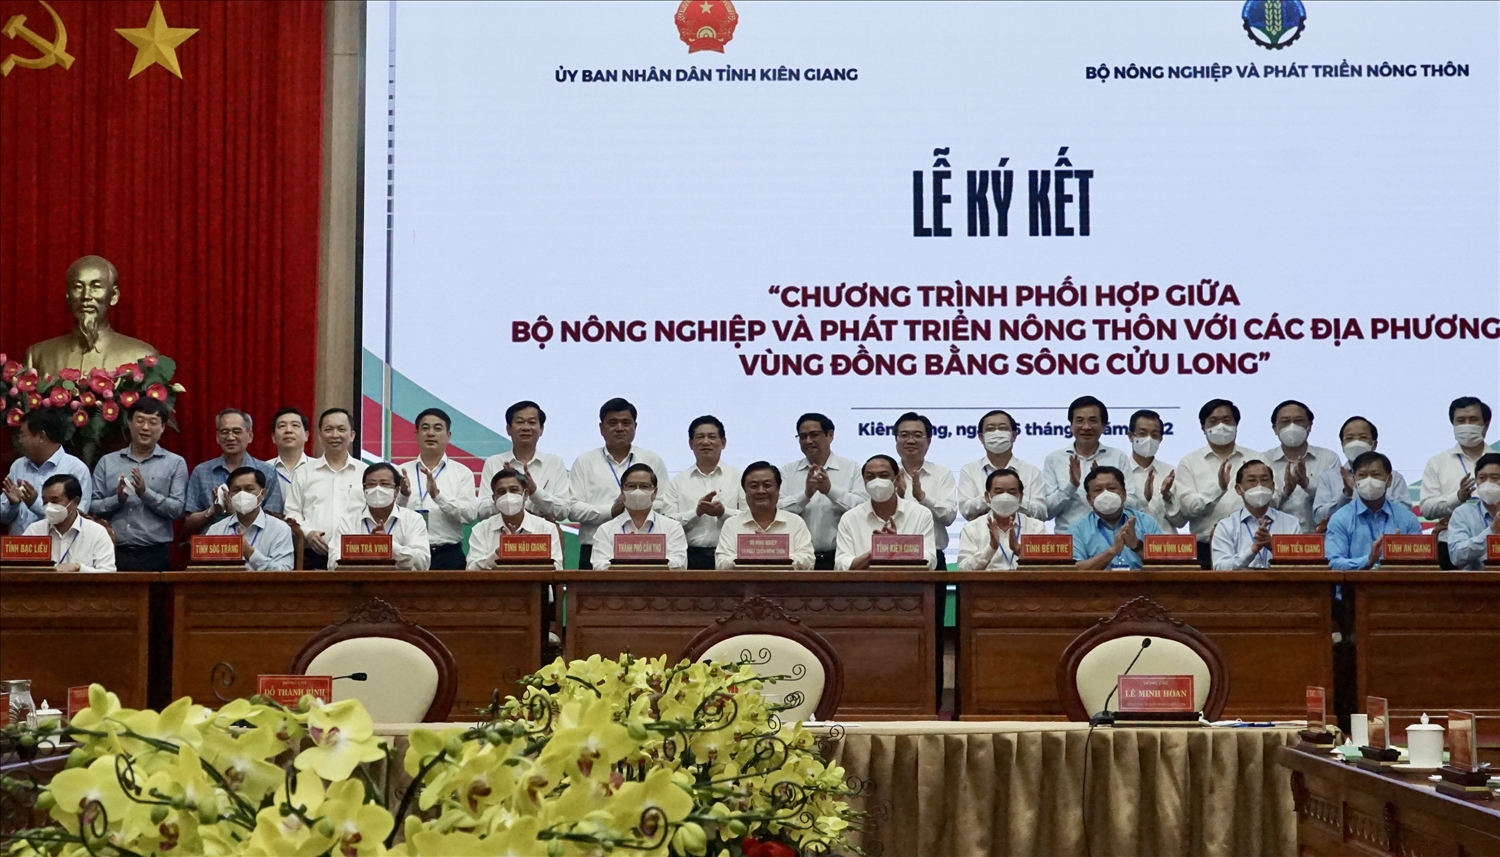 Thủ tướng Phạm Minh Chính cùng các đại biểu chứng kiến lễ ký kết Chương trình phối hợp công tác giữa Bộ Nông nghiệp và Phát triển nông thôn với các địa phương vùng ĐBSCL